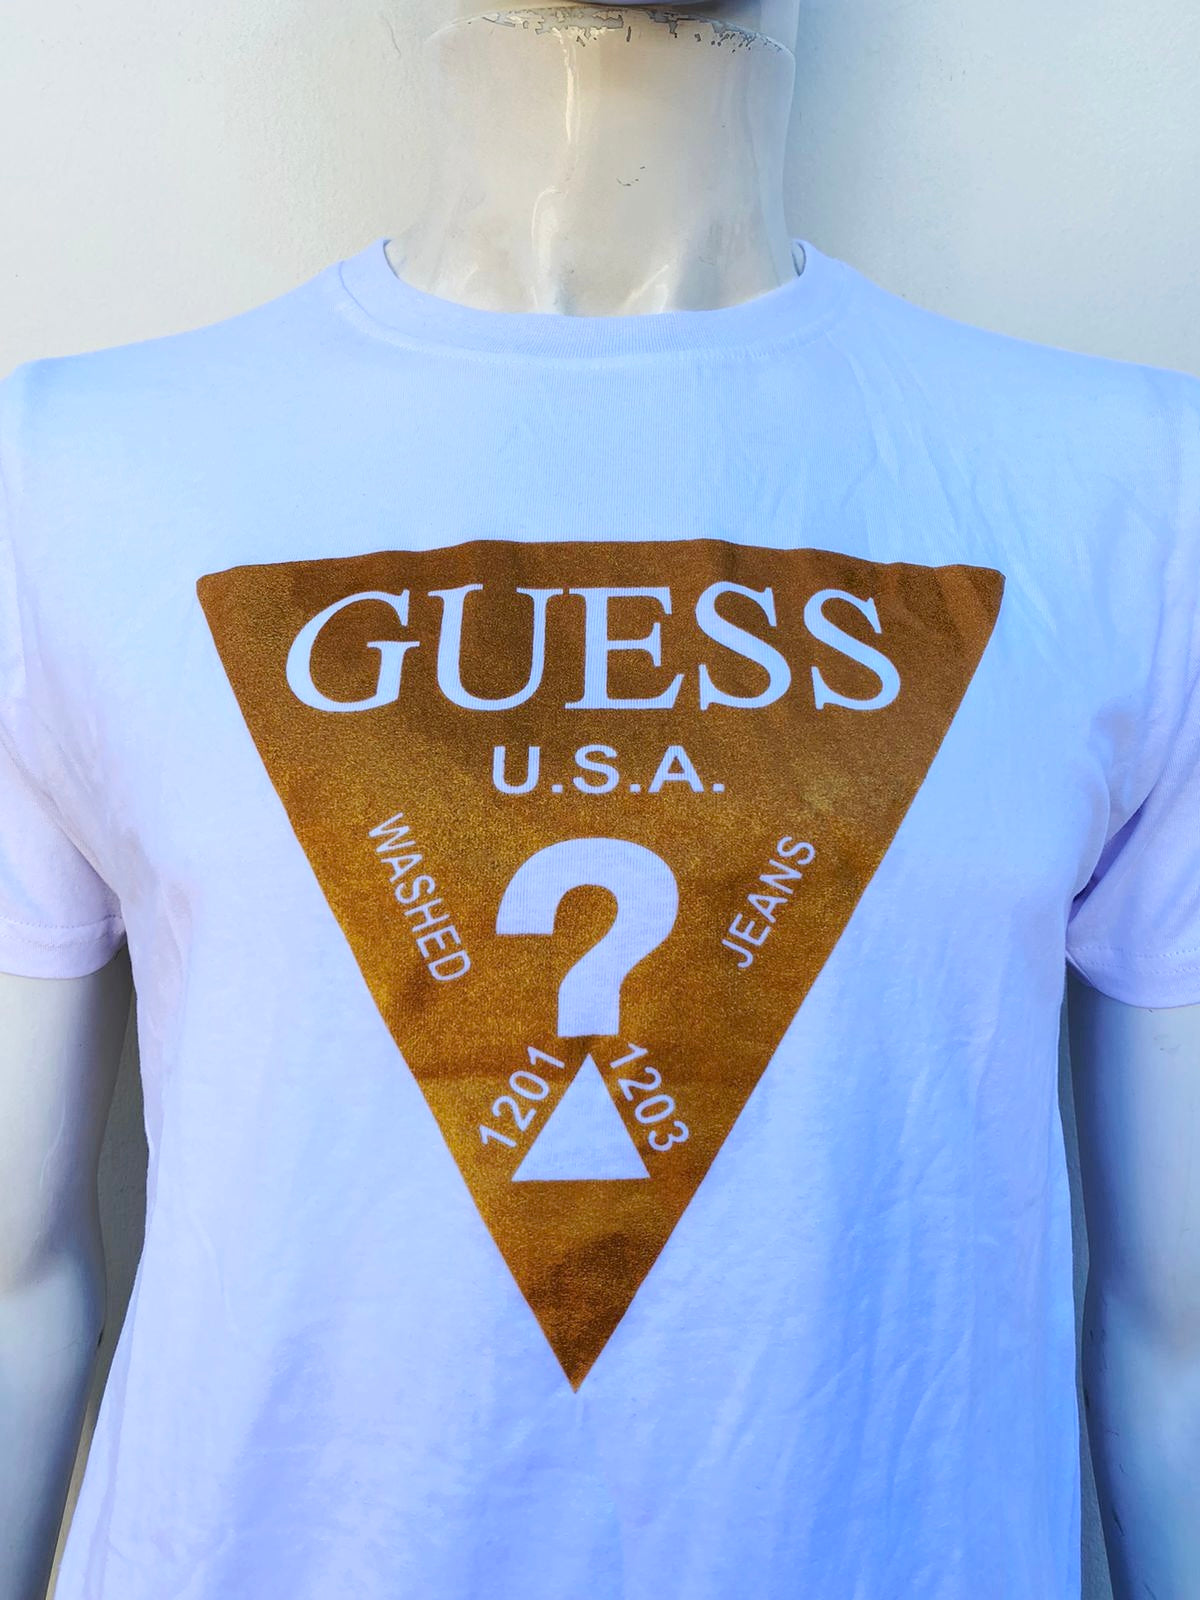 T-shirt Guess original blanco con logotipo Gues en dorado, en forma de triangulo y signo de ?.